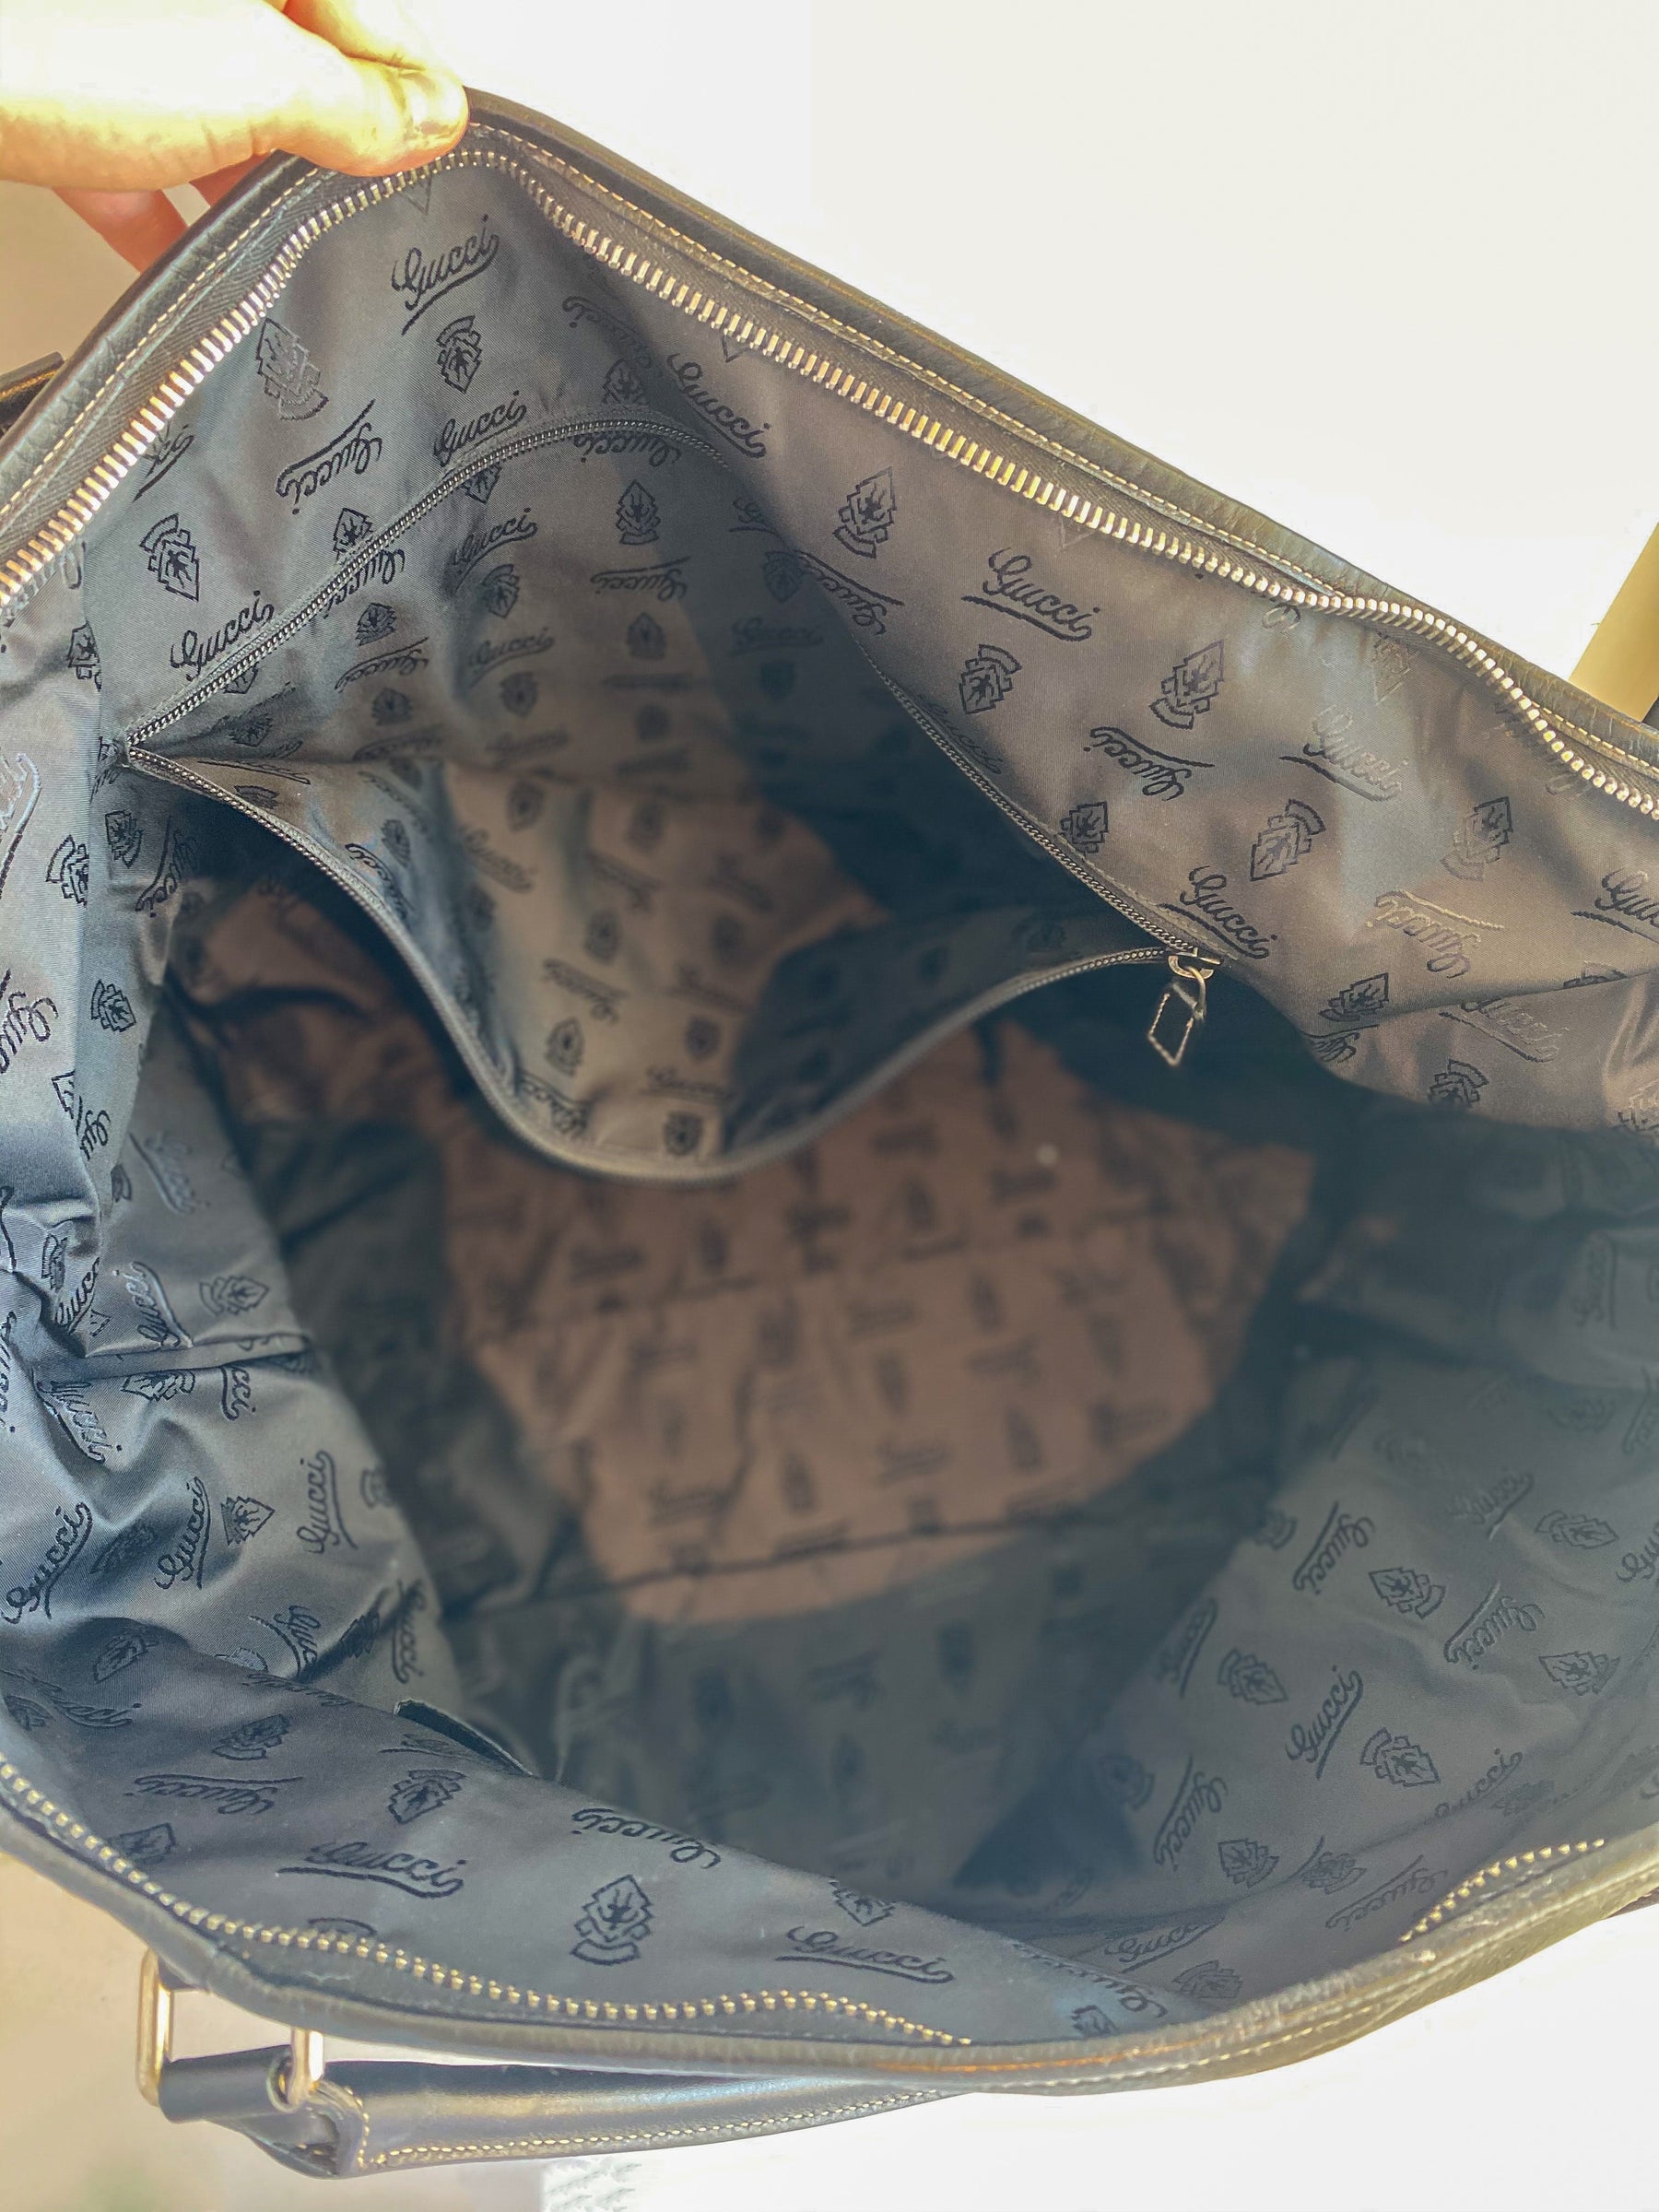 Gucci Black Leather Weekender Bag Inside of Bag